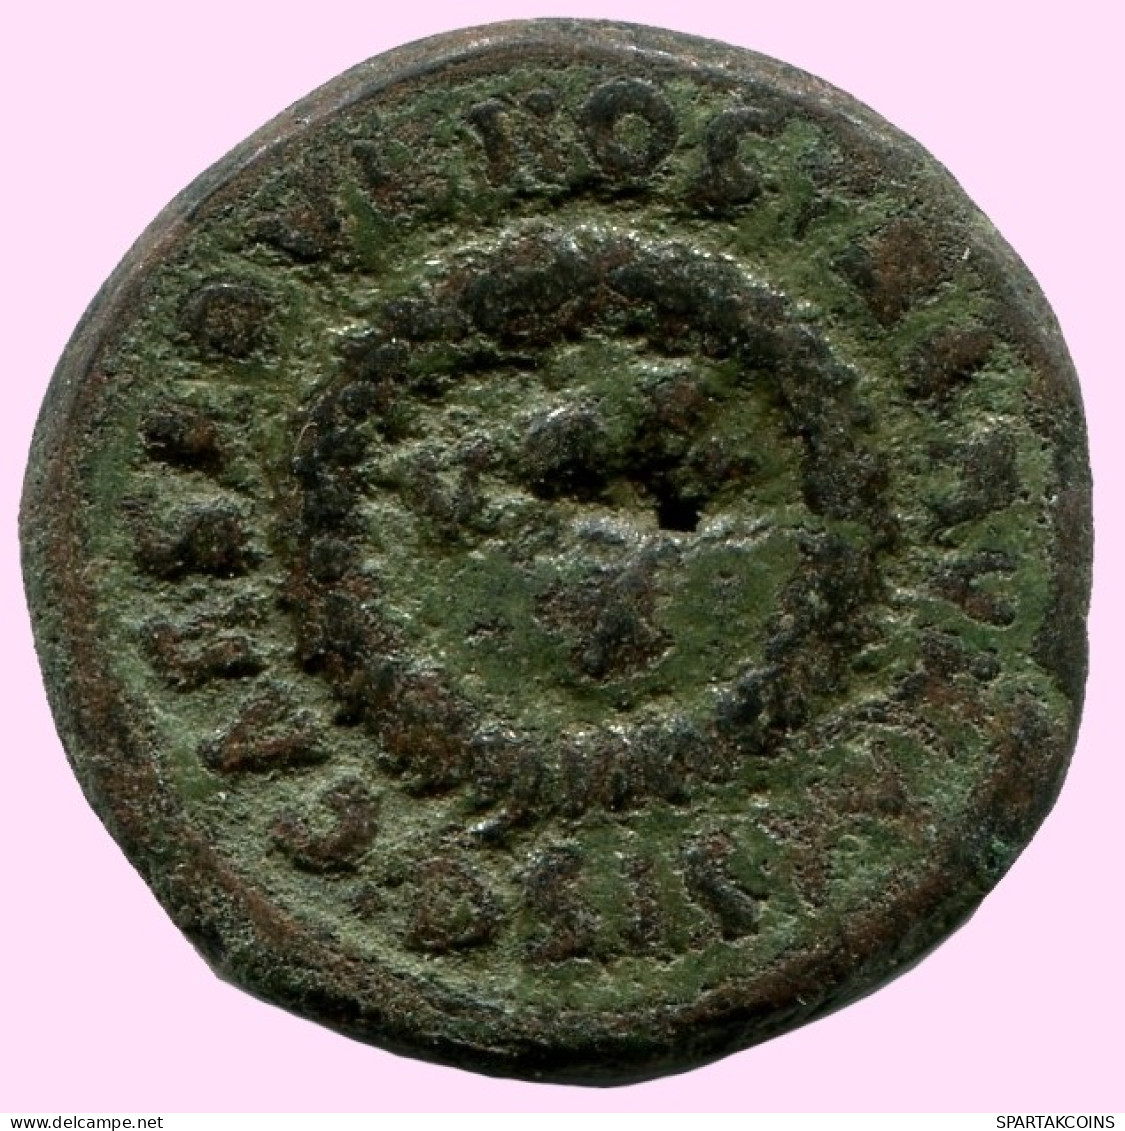 CONSTANTINE I Authentische Antike RÖMISCHEN KAISERZEIT Münze #ANC12234.12.D.A - Der Christlischen Kaiser (307 / 363)